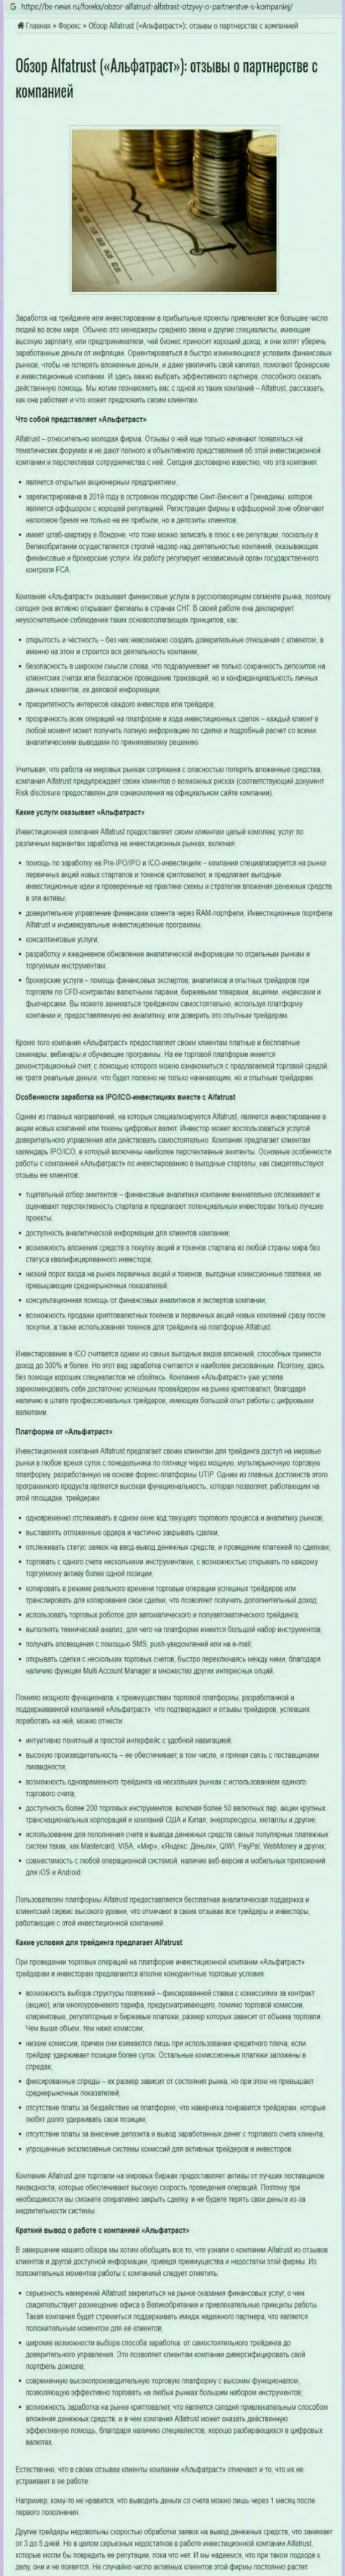 Онлайн-ресурс bs news ru представил материал о forex организации Альфа Траст